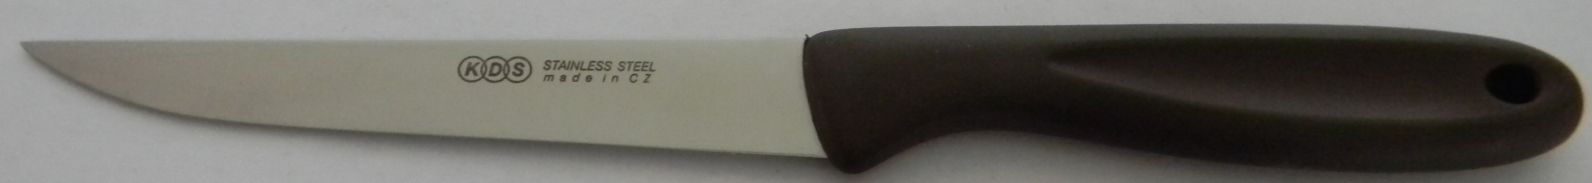 Nůž kuchyňský 5 hornošpičatý 24 cm (čepel 12,5 cm) KDS Economy typ 2356